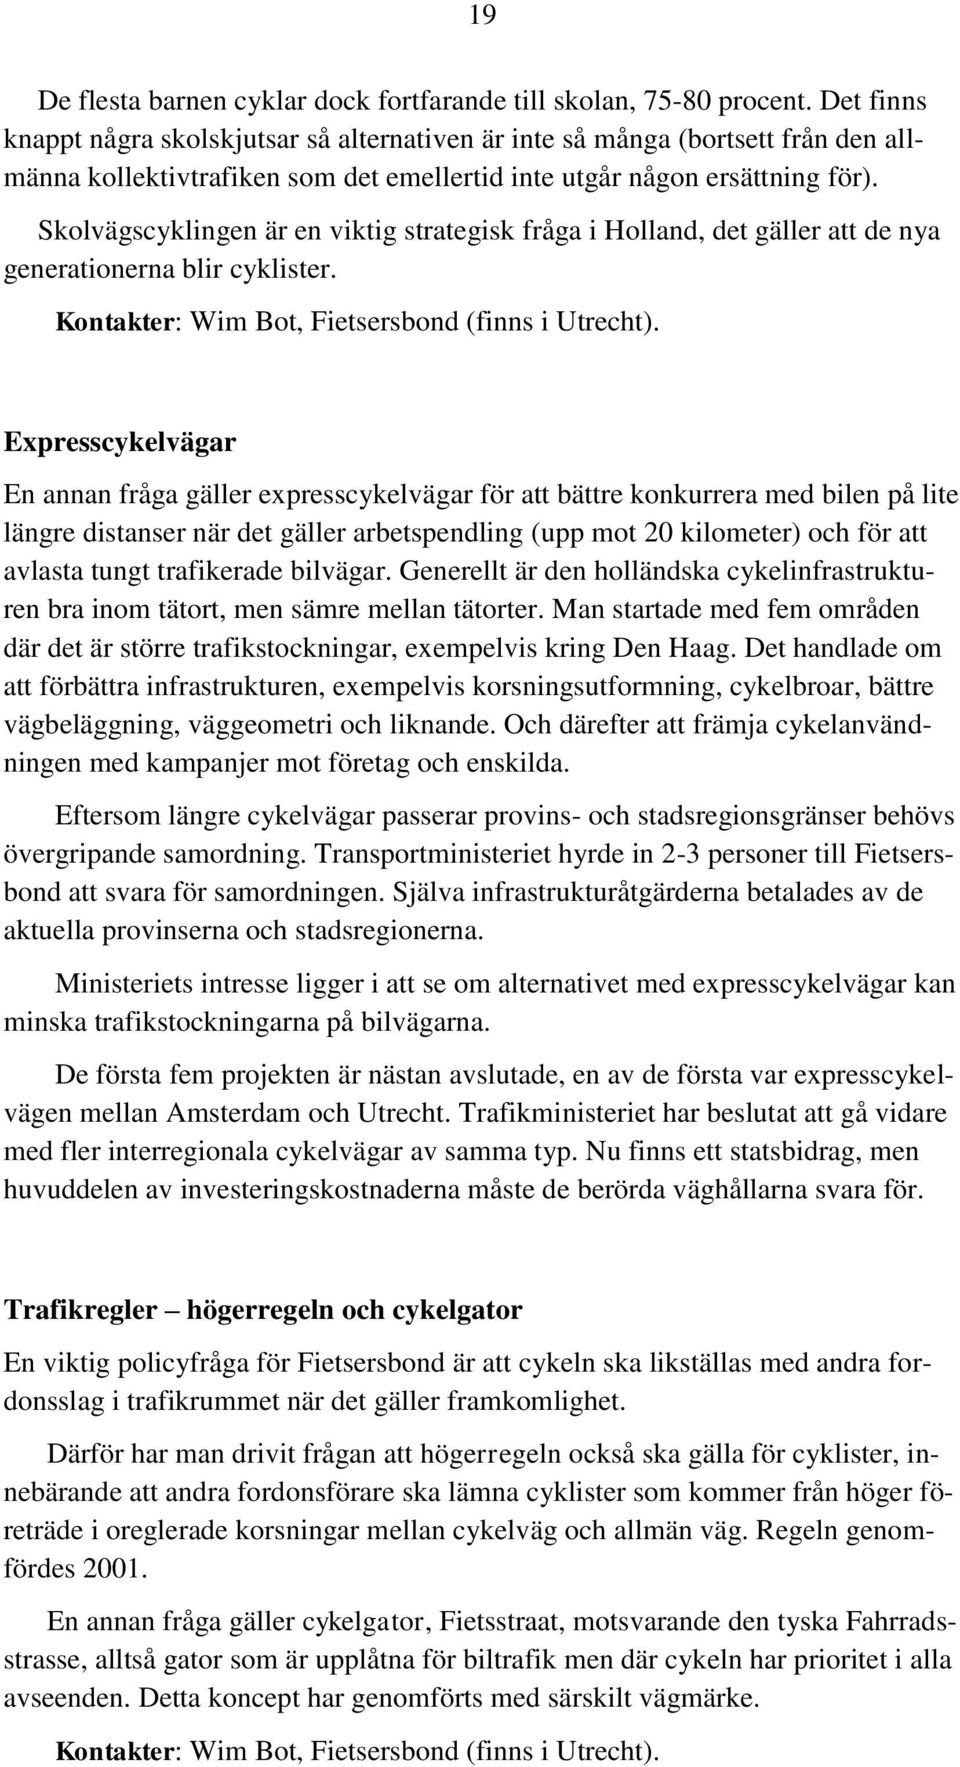 Skolvägscyklingen är en viktig strategisk fråga i Holland, det gäller att de nya generationerna blir cyklister. Kontakter: Wim Bot, Fietsersbond (finns i Utrecht).